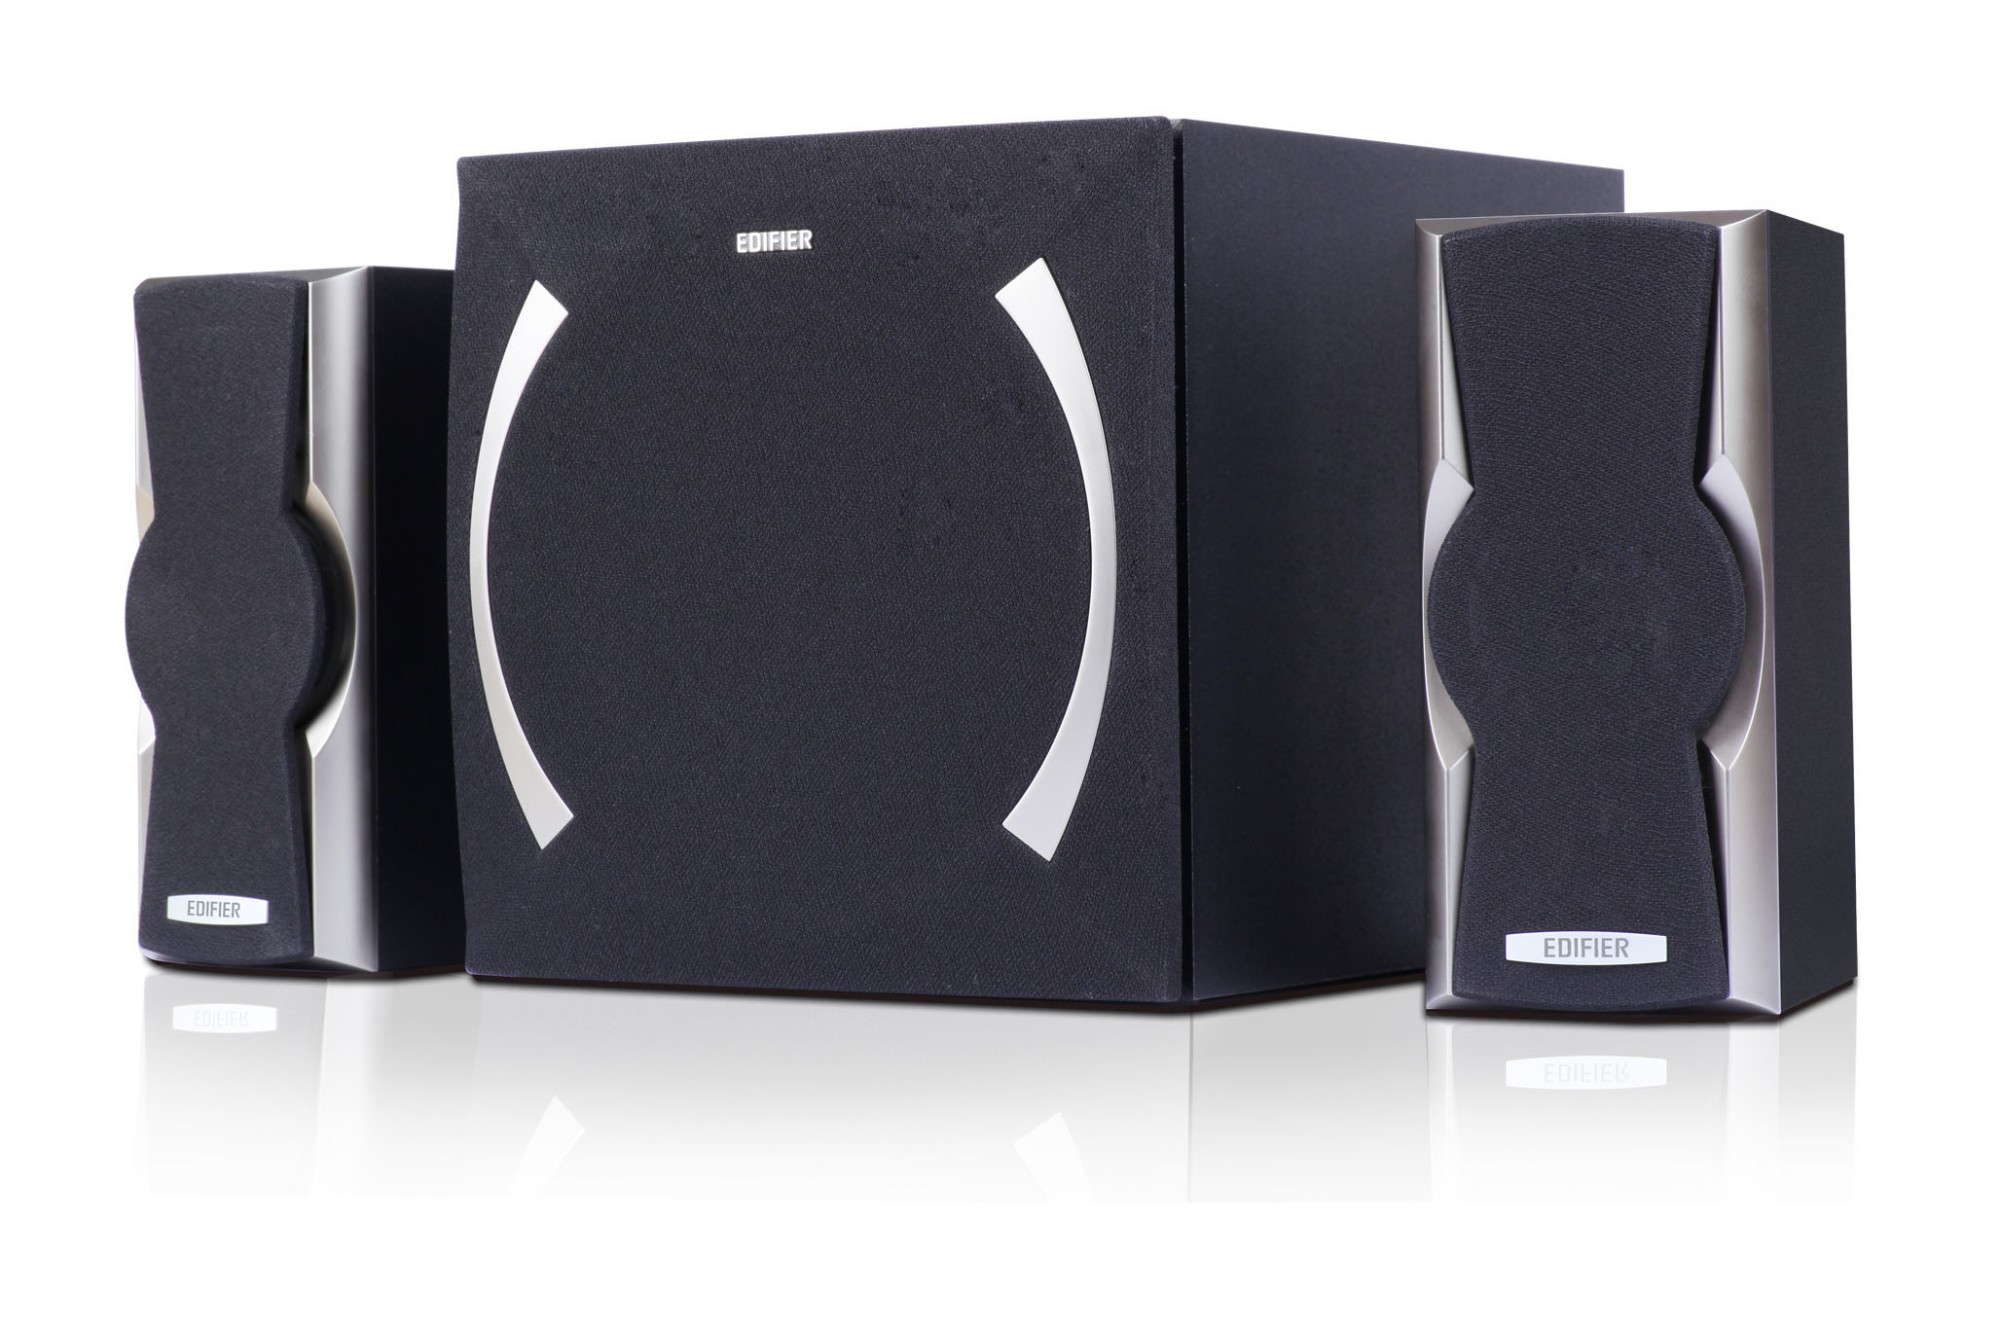 Edifier XM6BT speaker set 2.1 channels 12 W Black, Silver